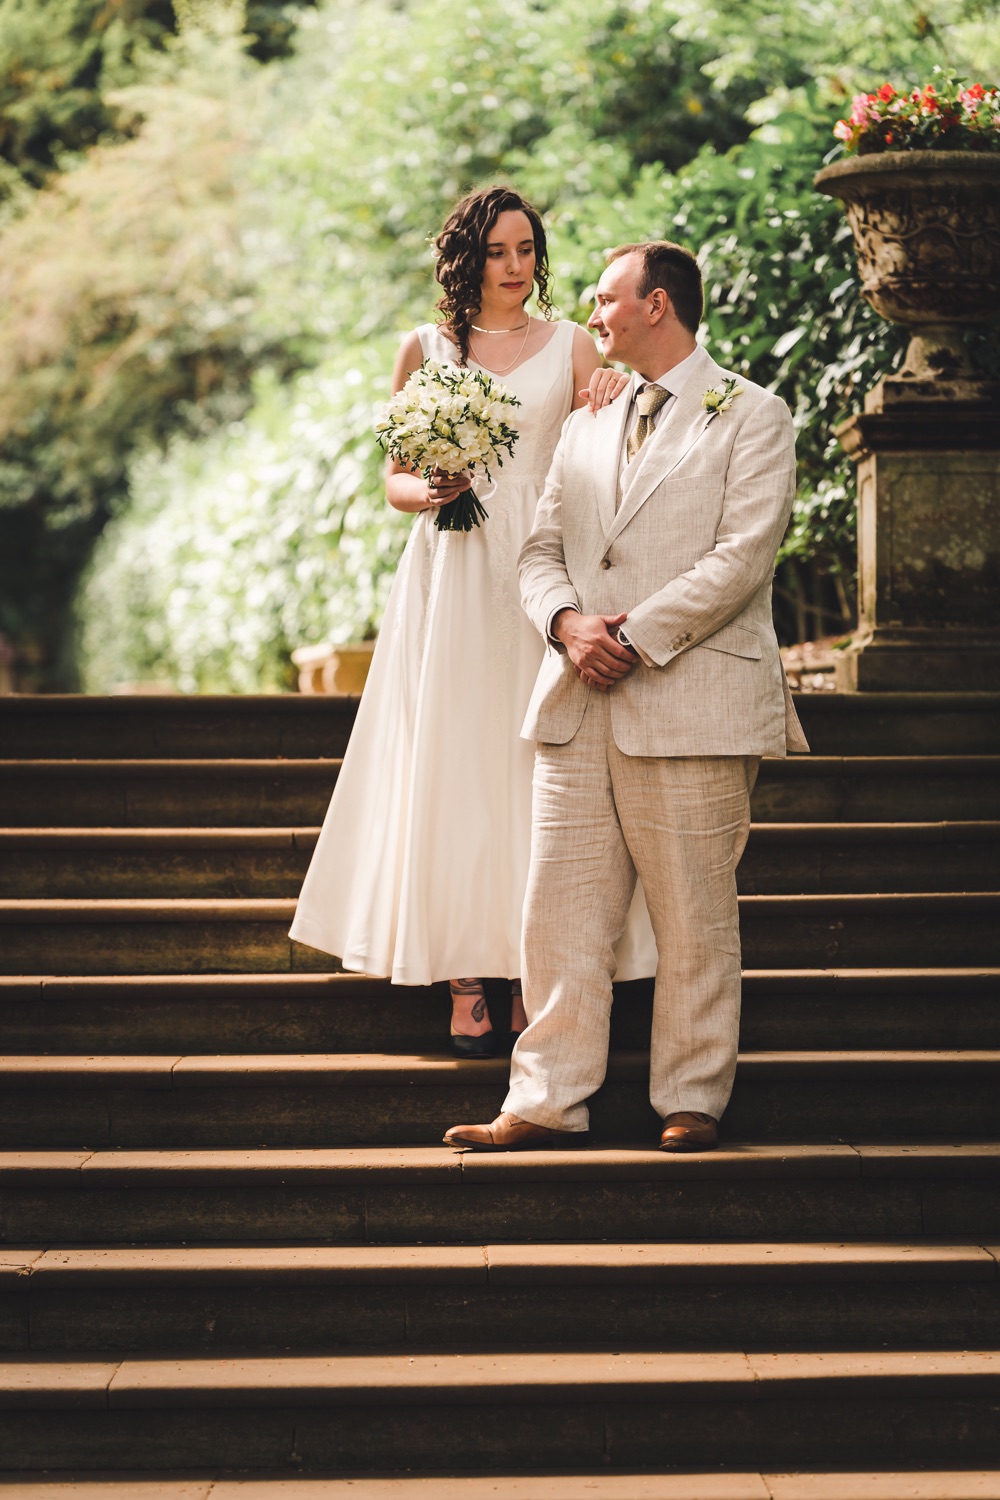 Shuttleworth Swiss Garden wedding photos | Bedford wedding photographer | Bedfordshire wedding photographer | Ben Chapman Photos